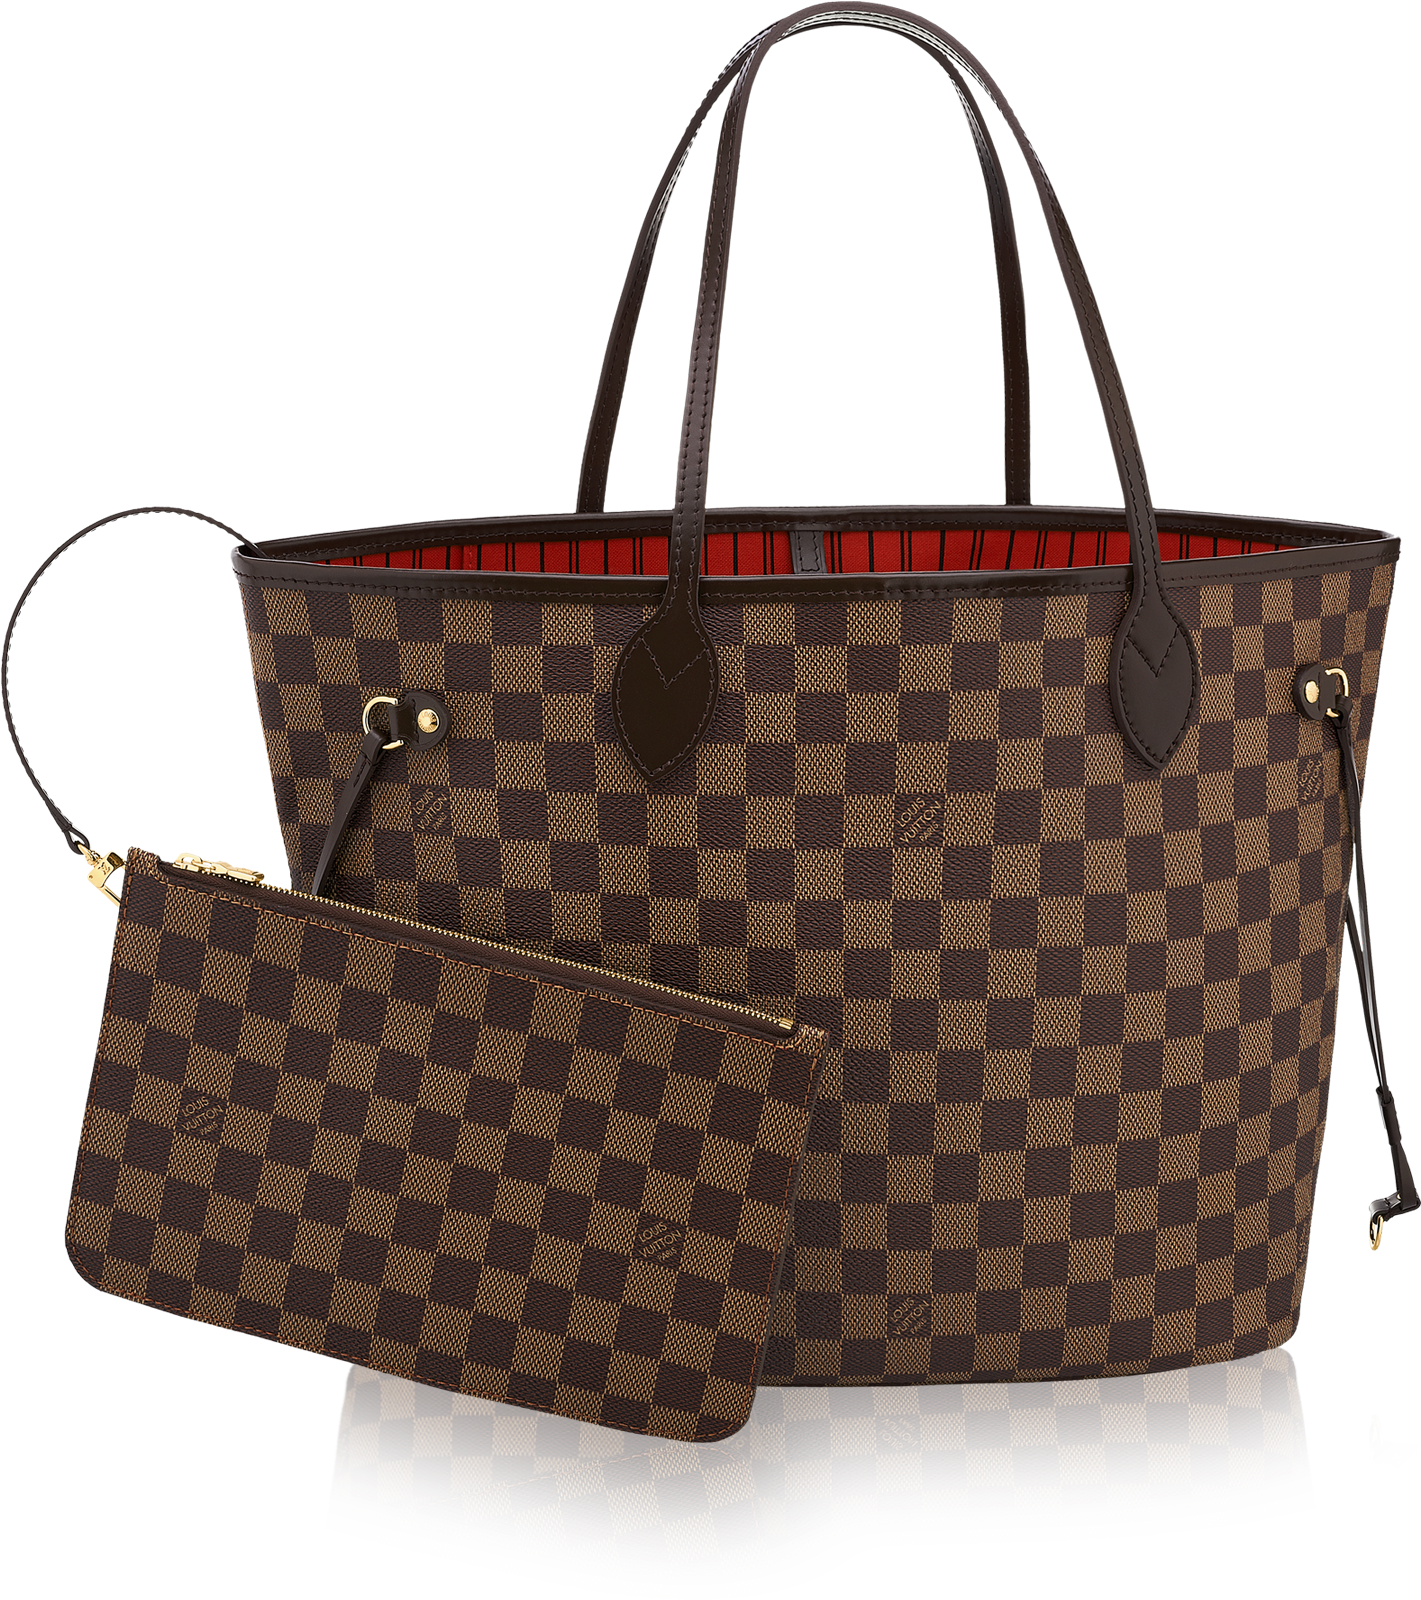 Brown Louis Vuitton кошелек PNG изображения фон